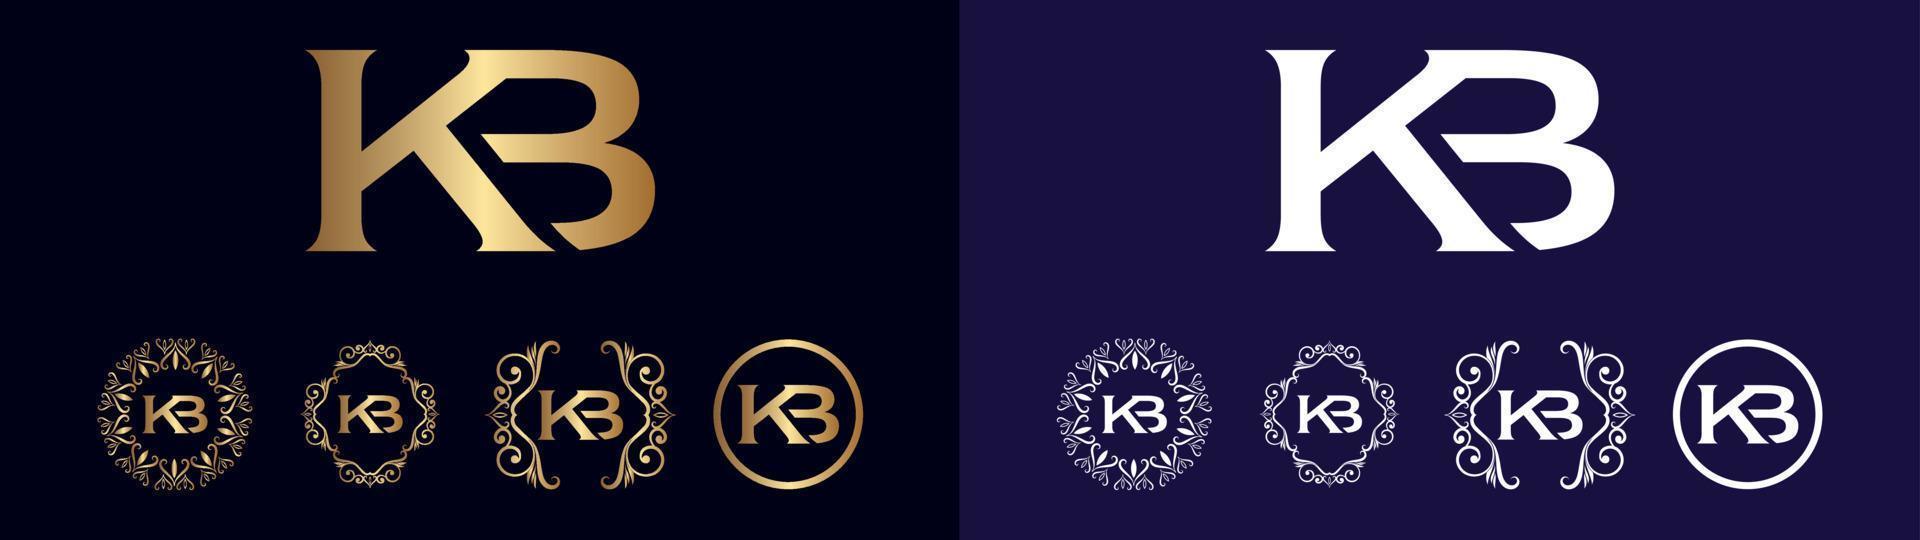 zakelijke merk logo kb ontwerp vector